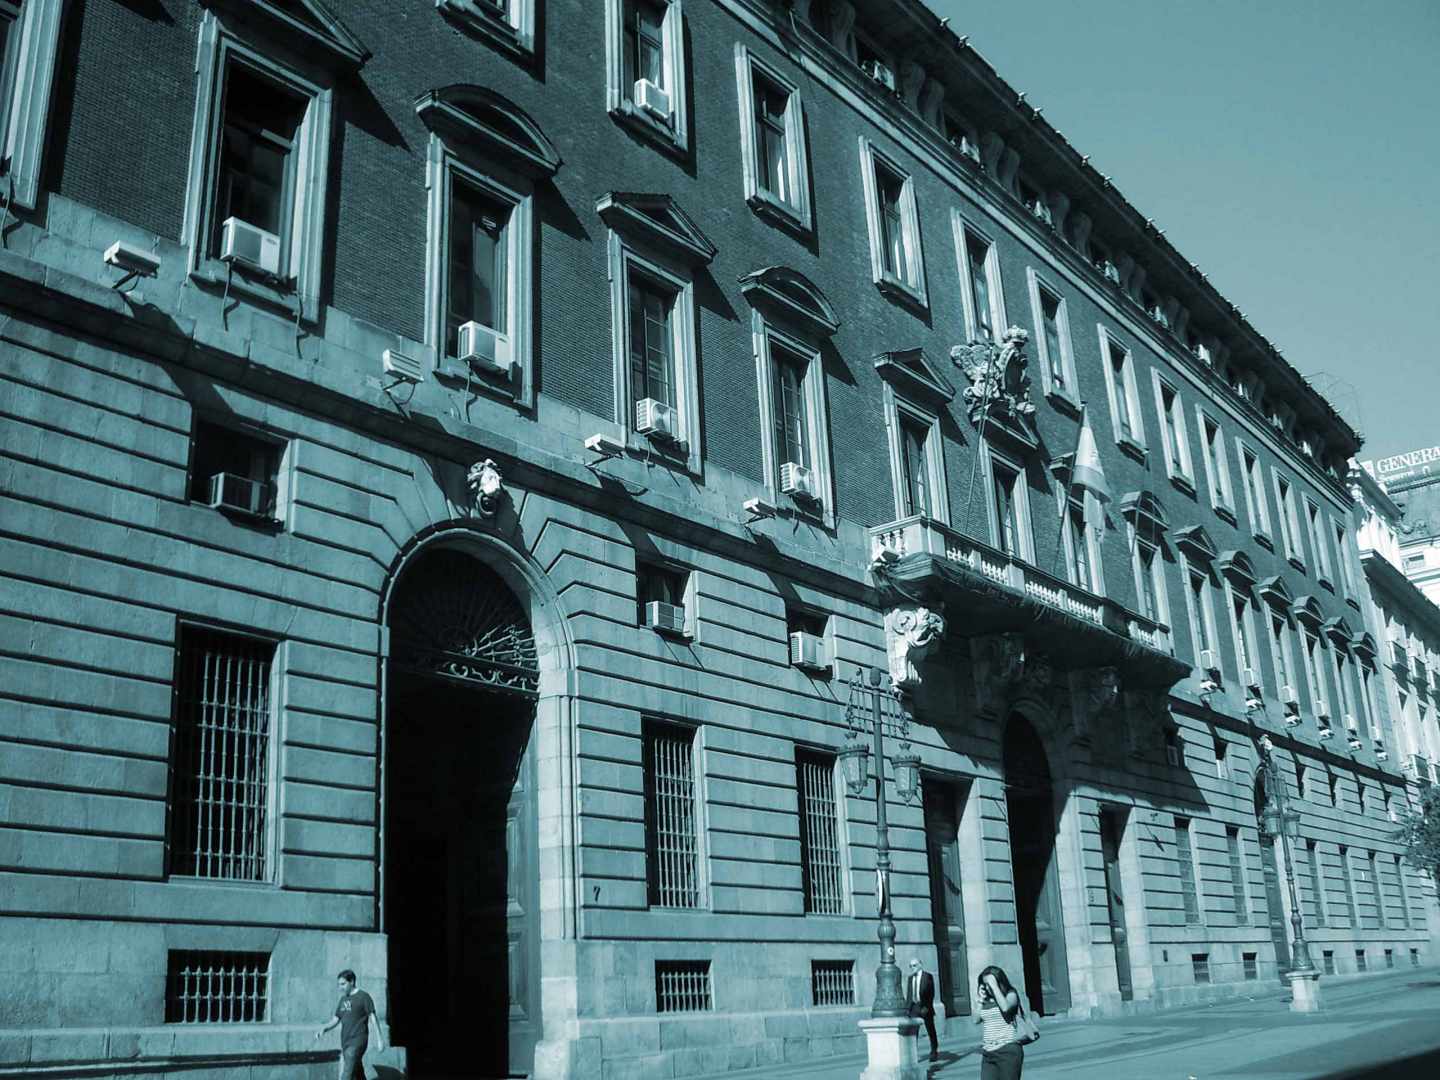 Fachada del Ministerio de Hacienda en Madrid.